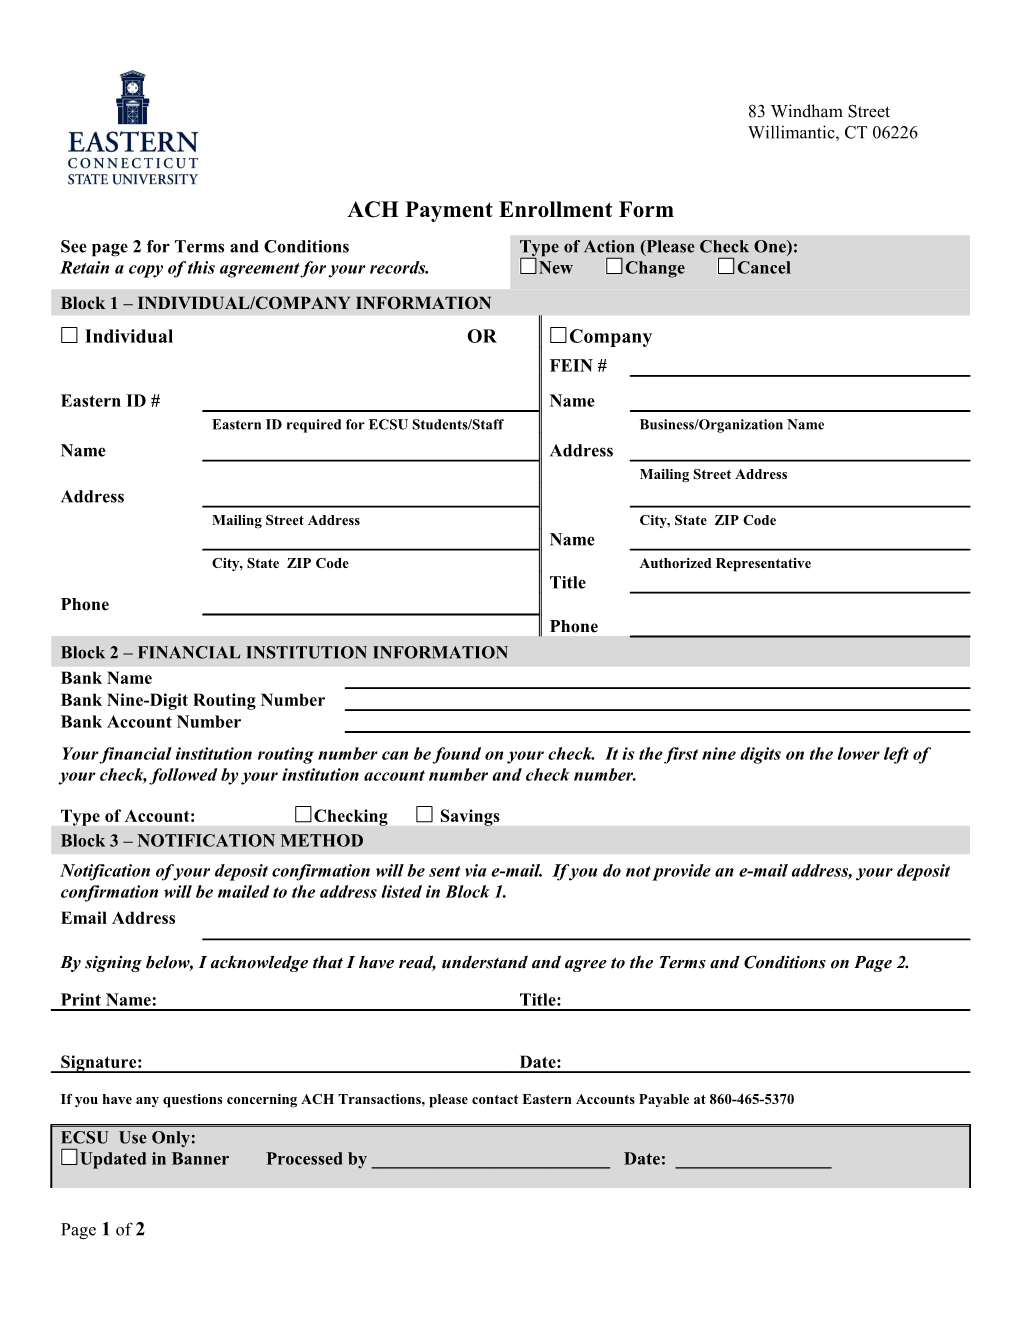 ACH Payment Enrollment Form